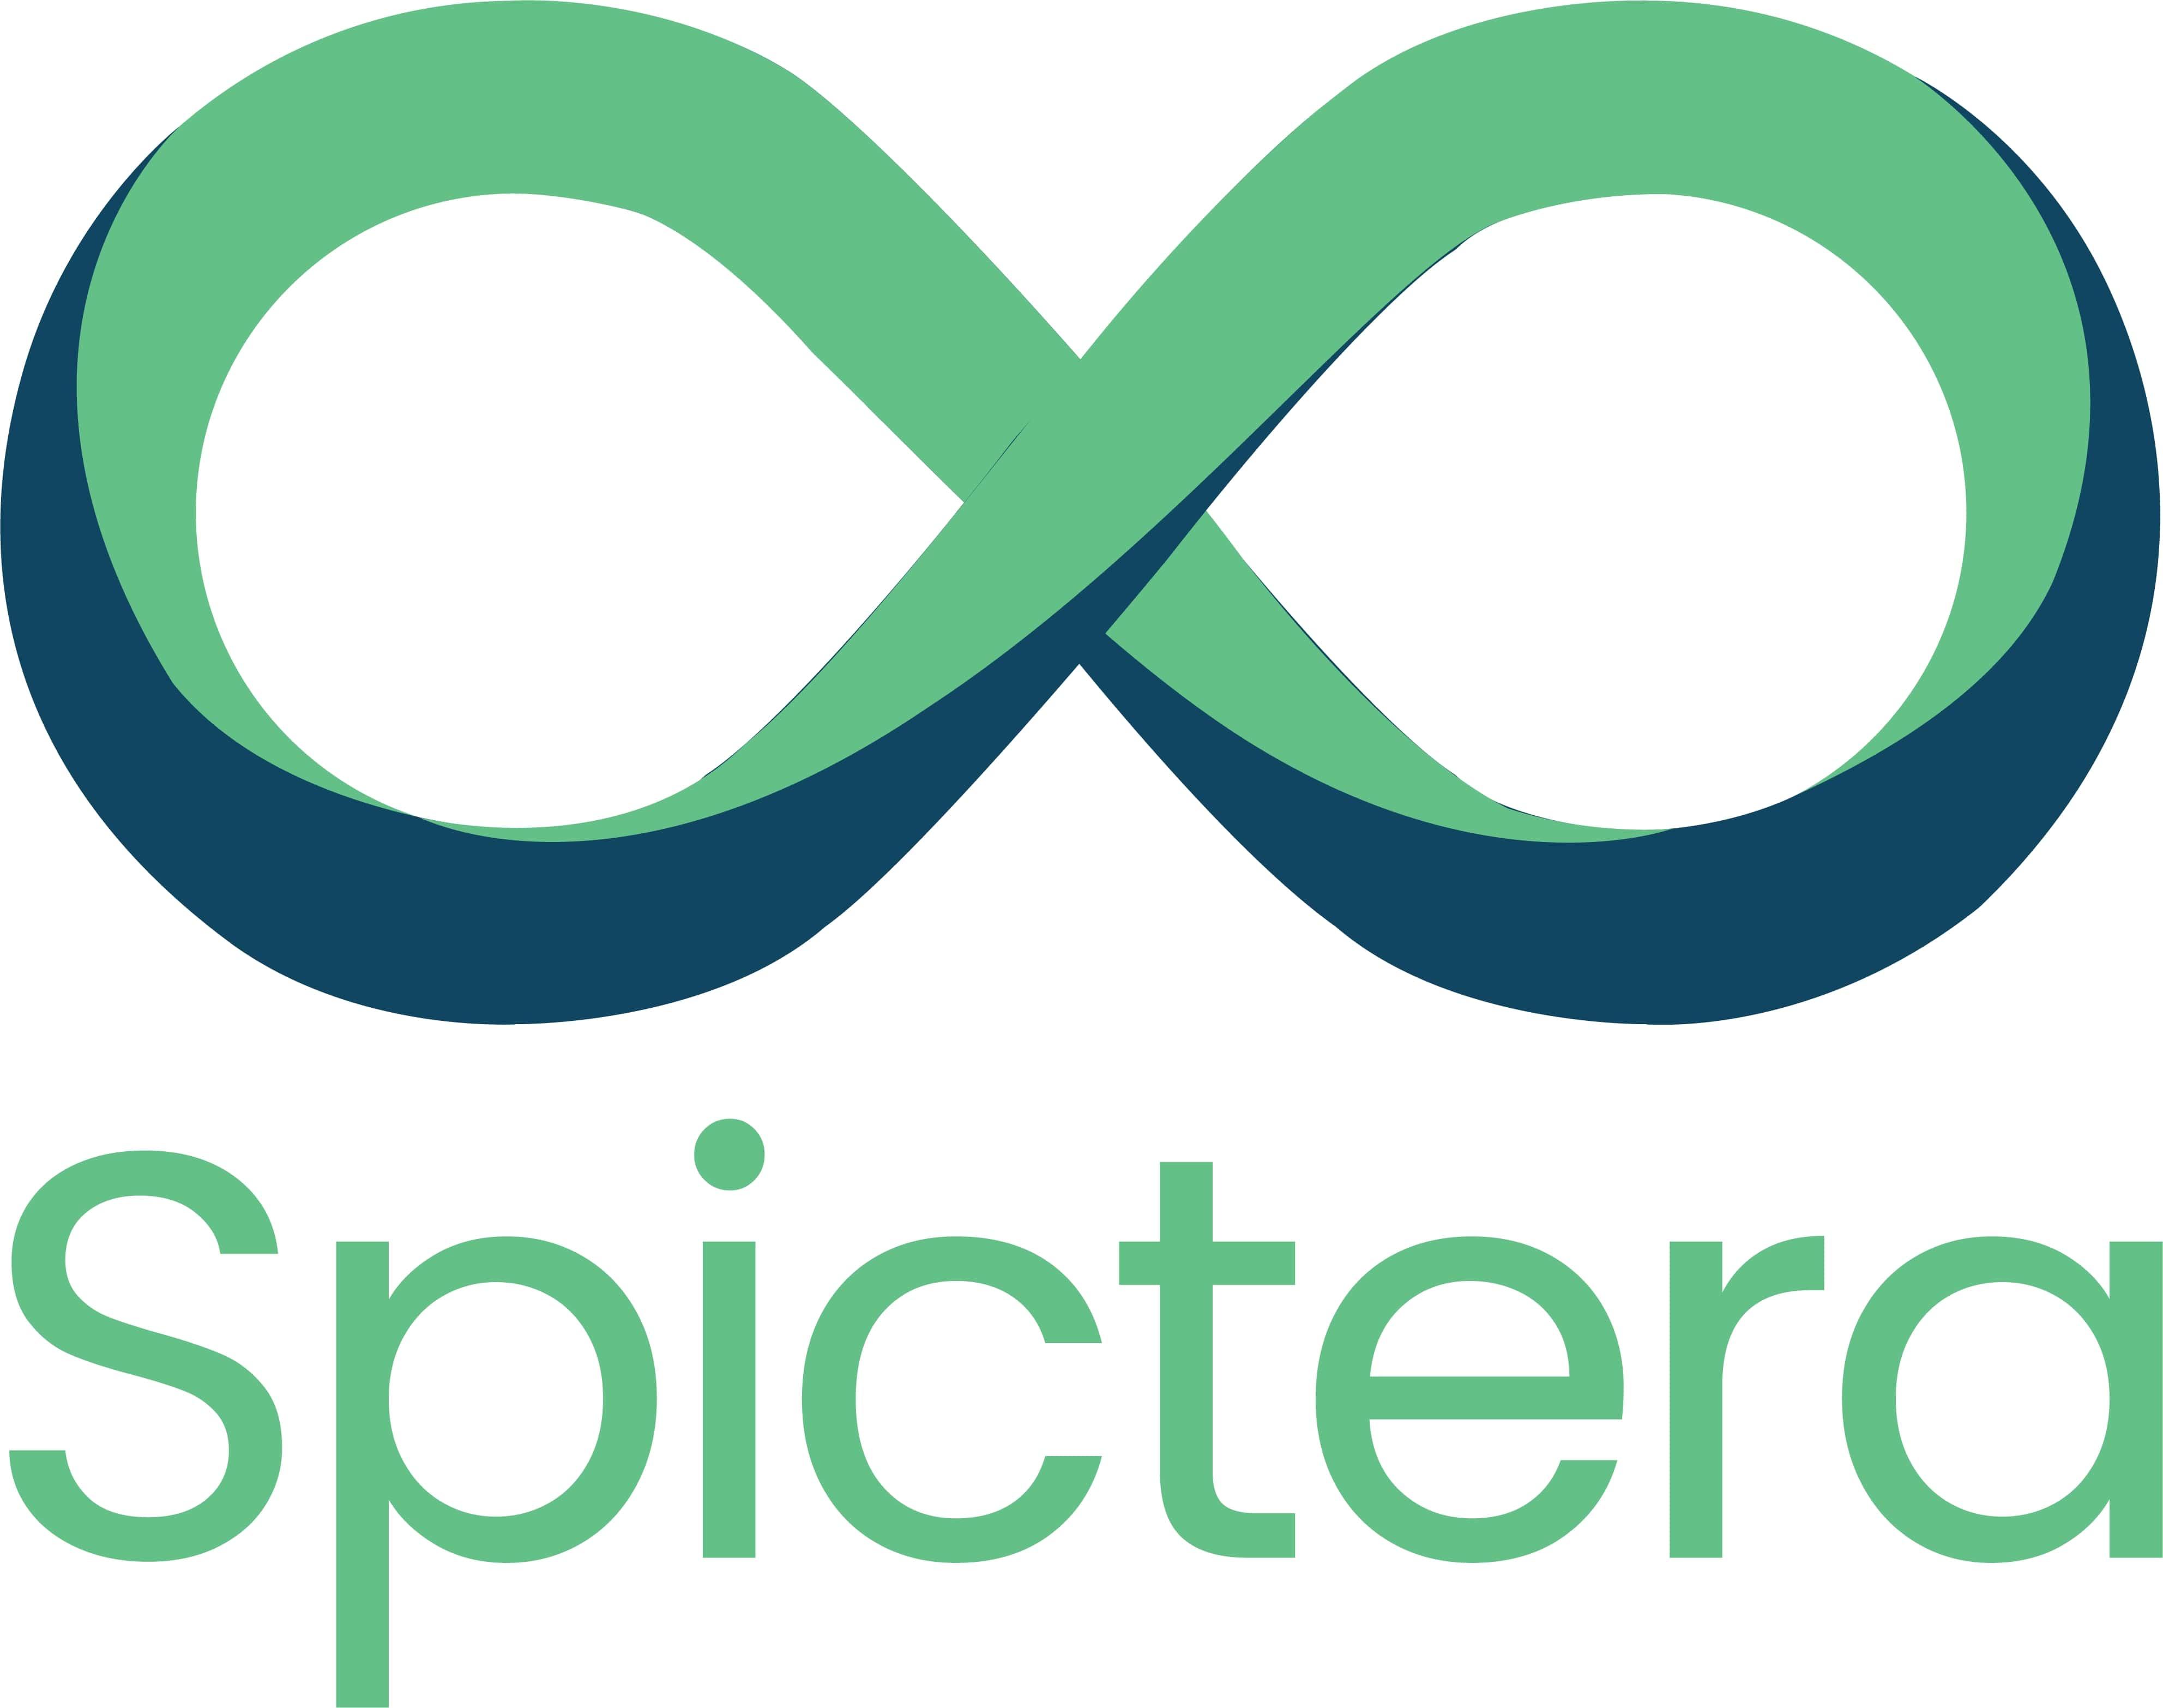 Spictera Ltd